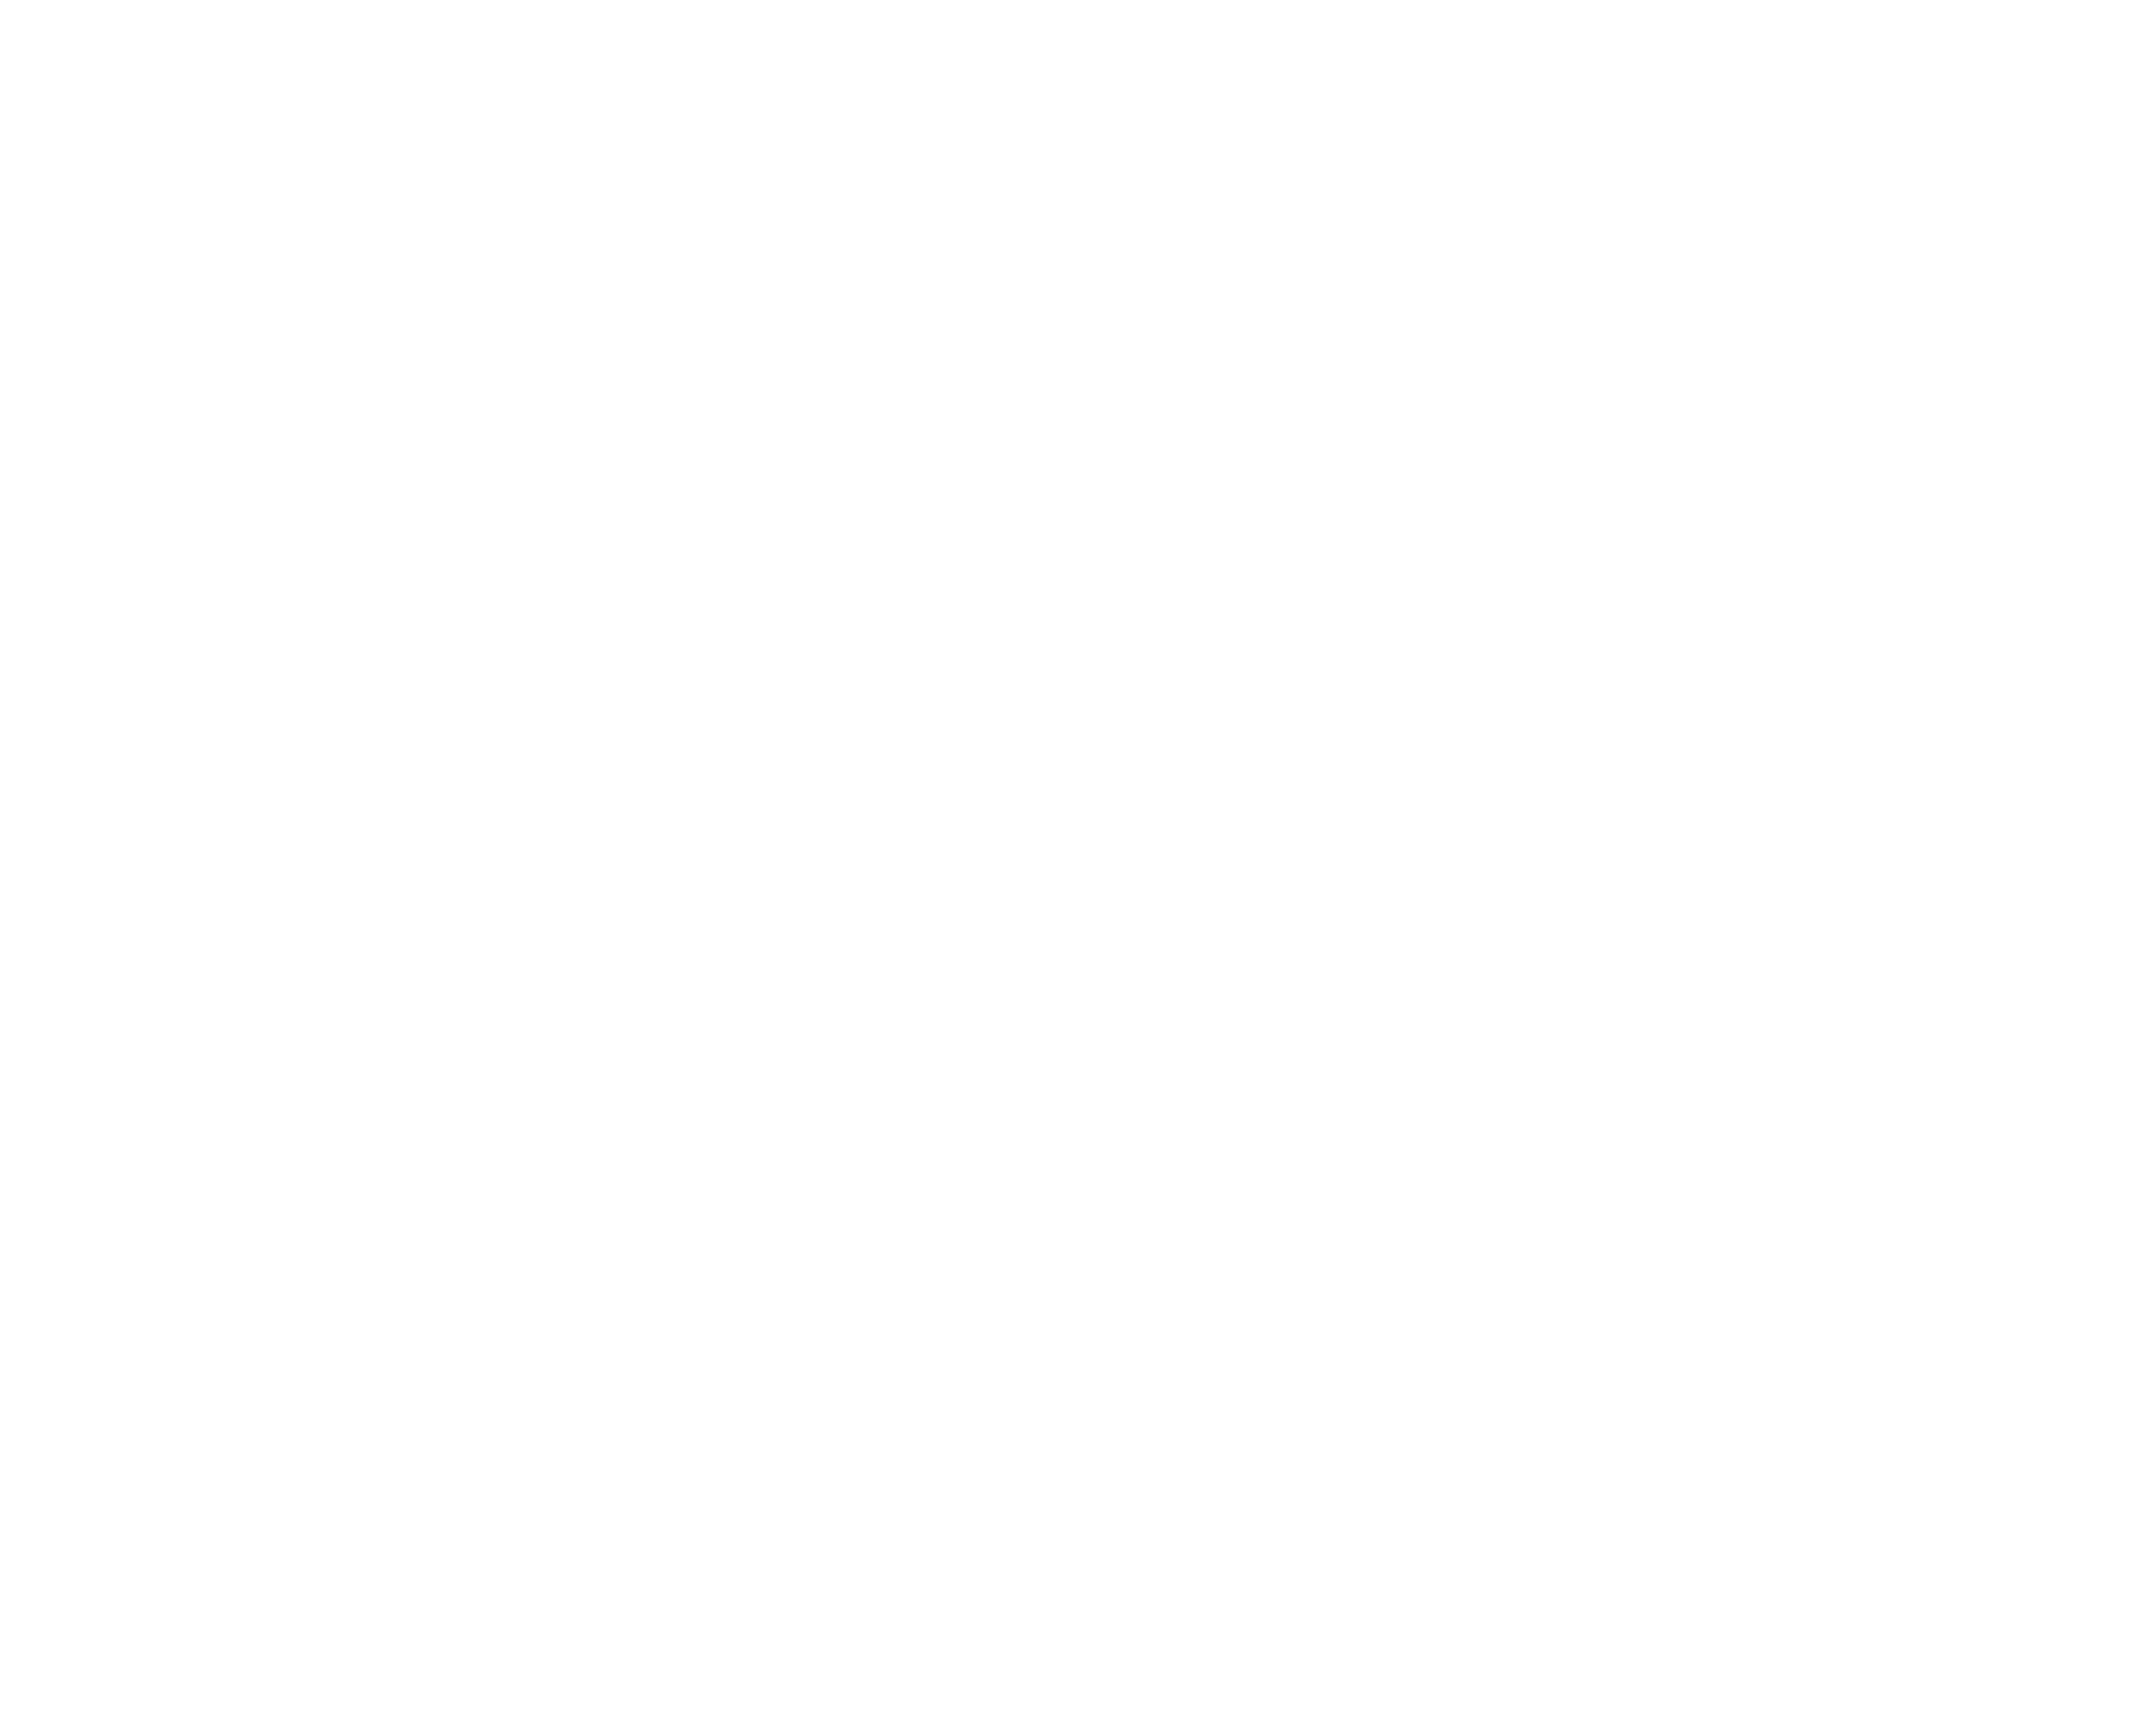 Orbit City eBikes